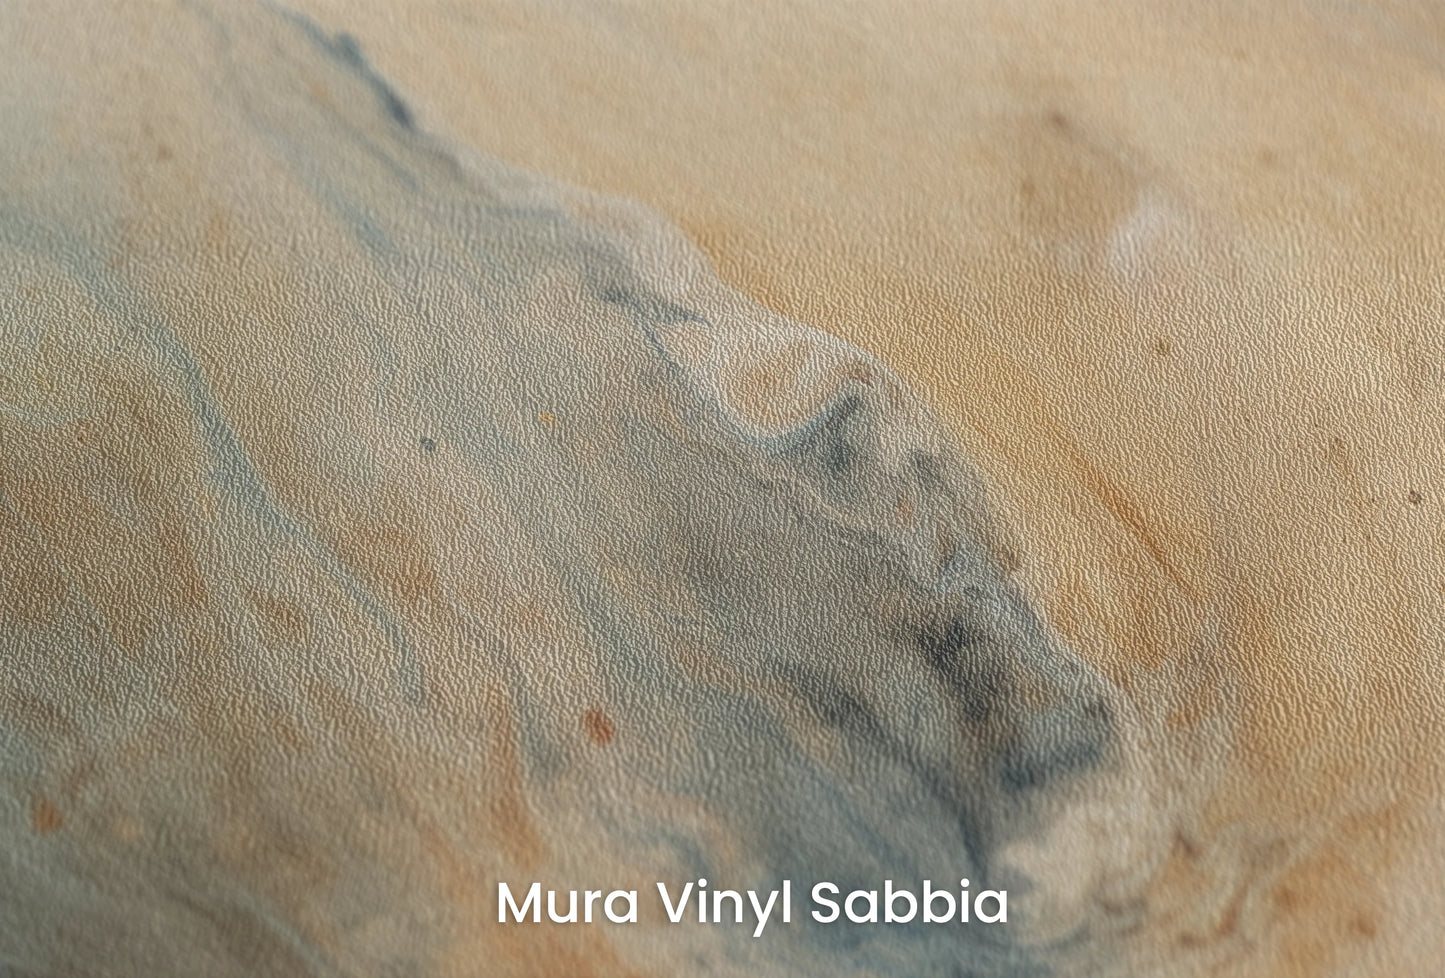 Zbliżenie na artystyczną fototapetę o nazwie Jupiter's Storm #2 na podłożu Mura Vinyl Sabbia struktura grubego ziarna piasku.